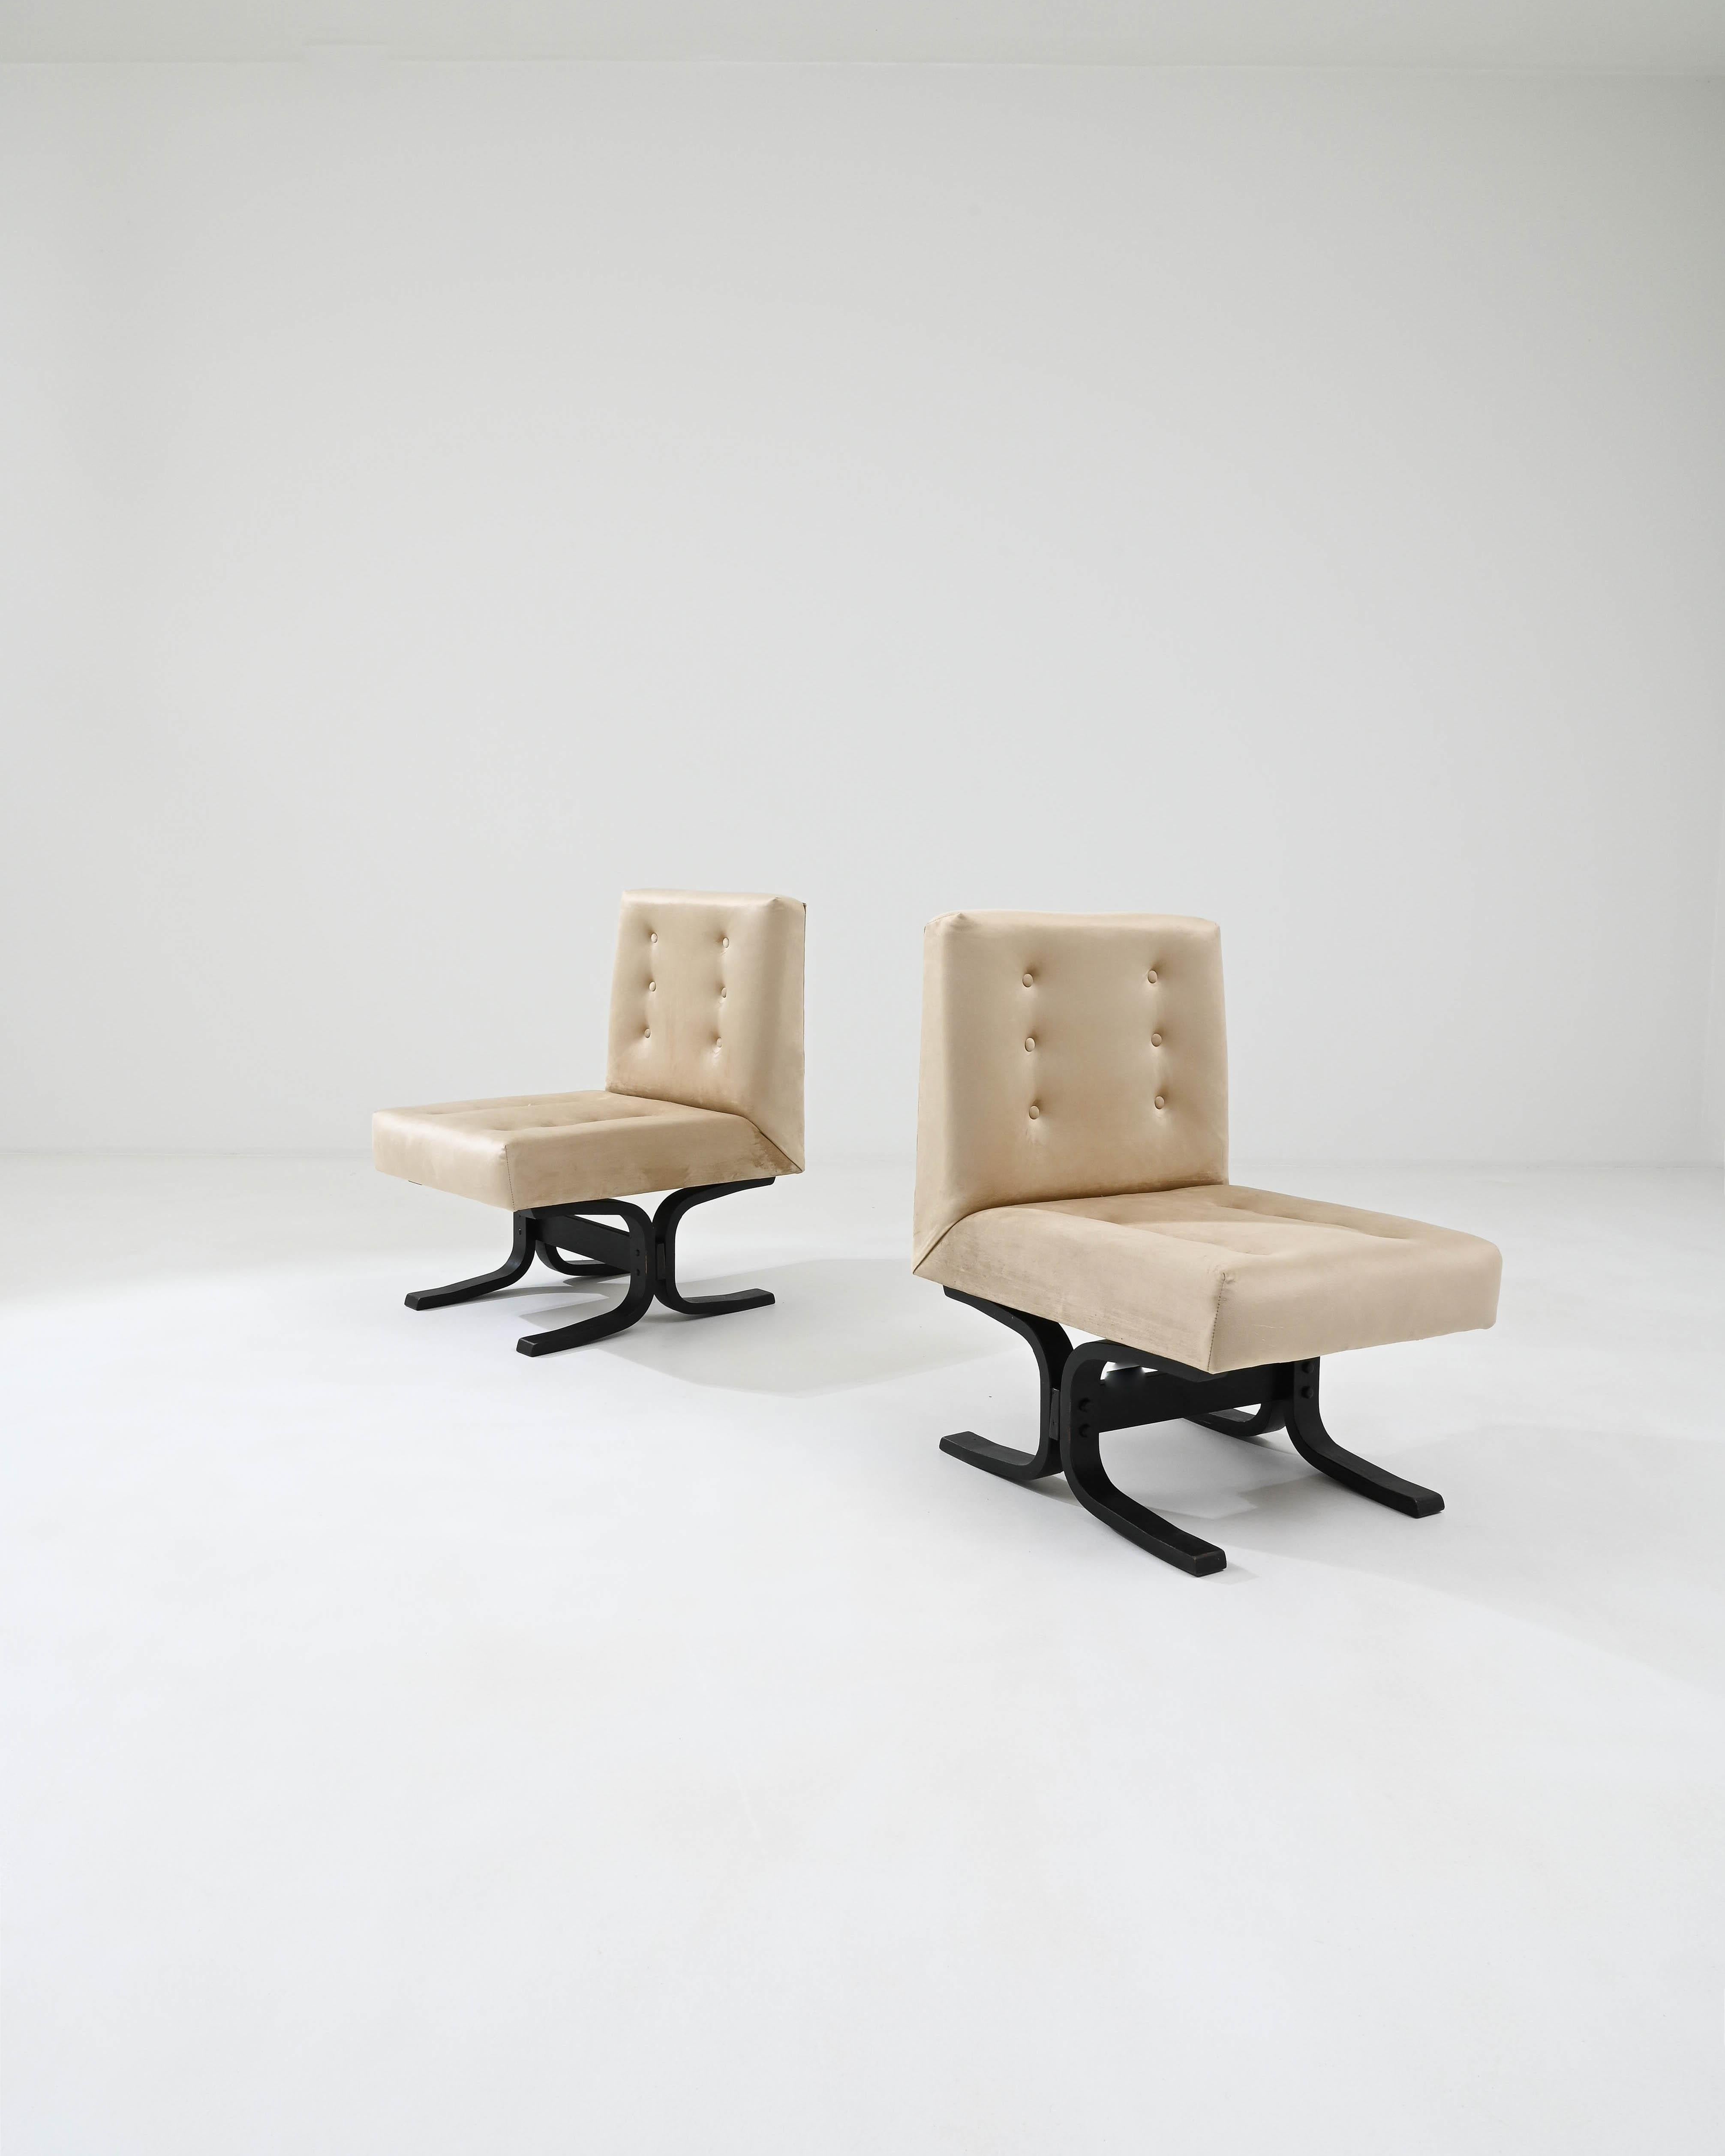 Cet ensemble antique comprend deux chaises tchèques rembourrées des années 1960 de Ludvik Volak, qui incarnent le design moderne du milieu du siècle. La douce teinte safran de la tapisserie d'ameublement dégage une élégance intemporelle. Fabriqués